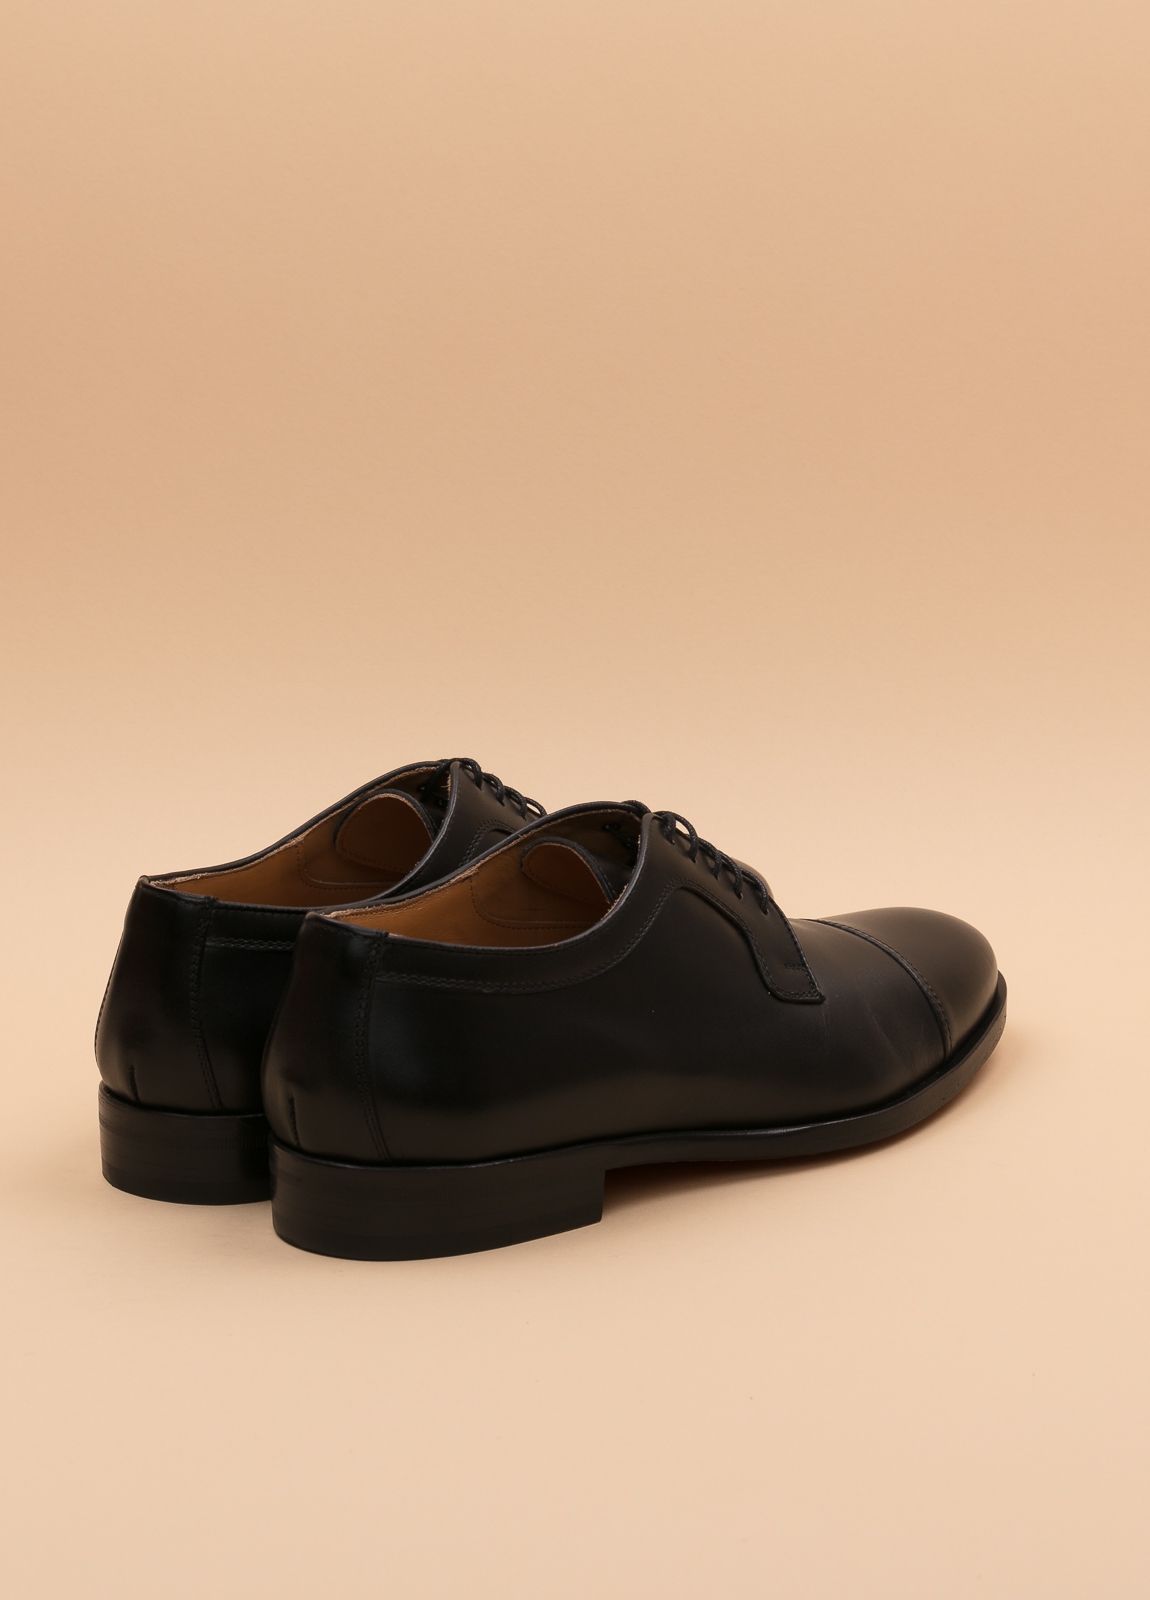 Zapato Formal Wear FUREST COLECCIÓN negro - Ítem3